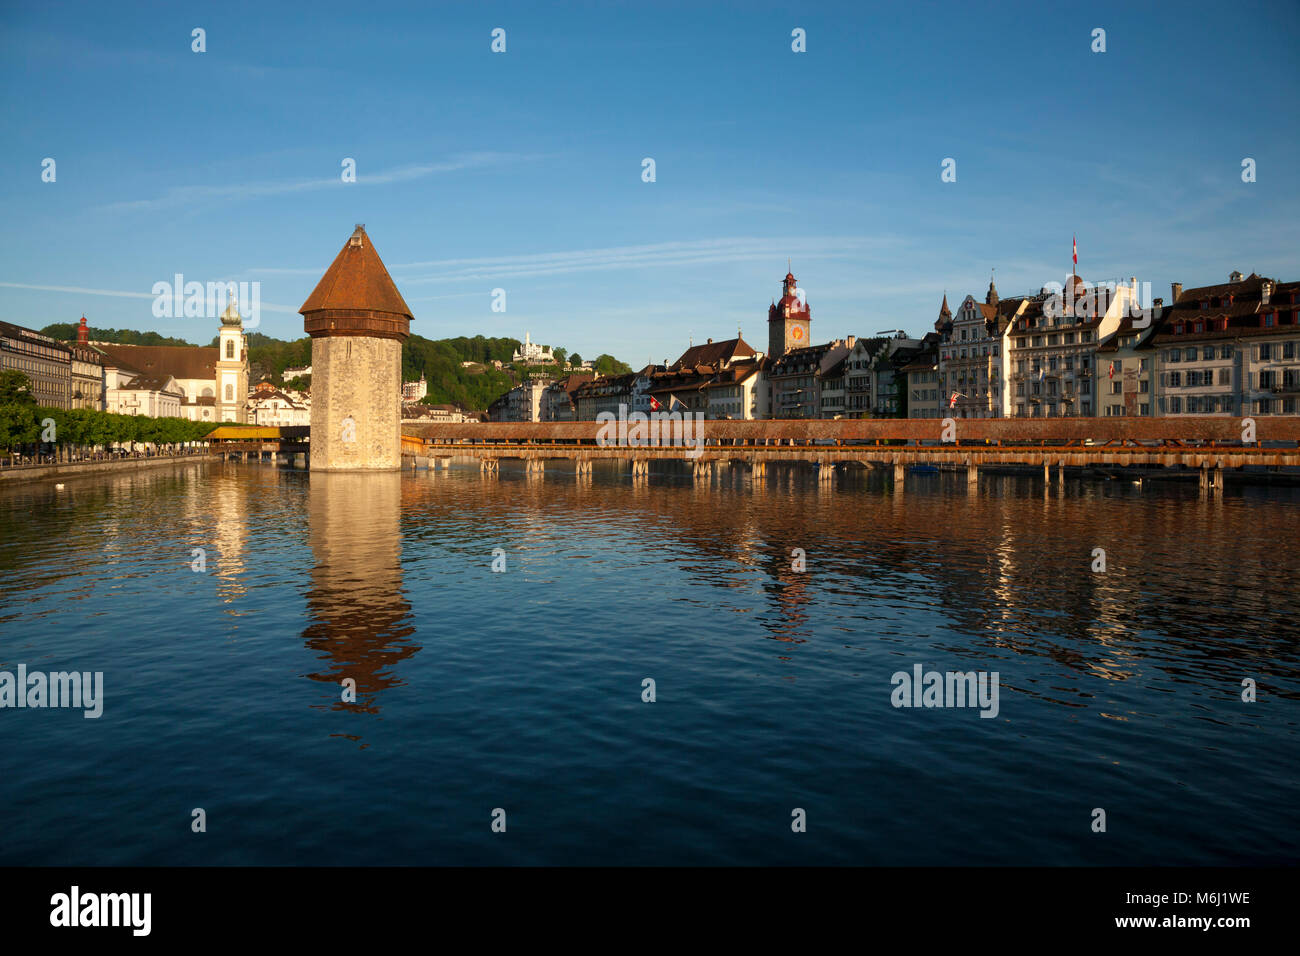 Schönes Licht auf mittelalterlichen Holz überdachte Brücke im See spiegeln, in der Innenstadt von Luzern Schweiz Gutsch hotel, Clock Tower, Masque, Geschäfte, blauer Himmel Stockfoto